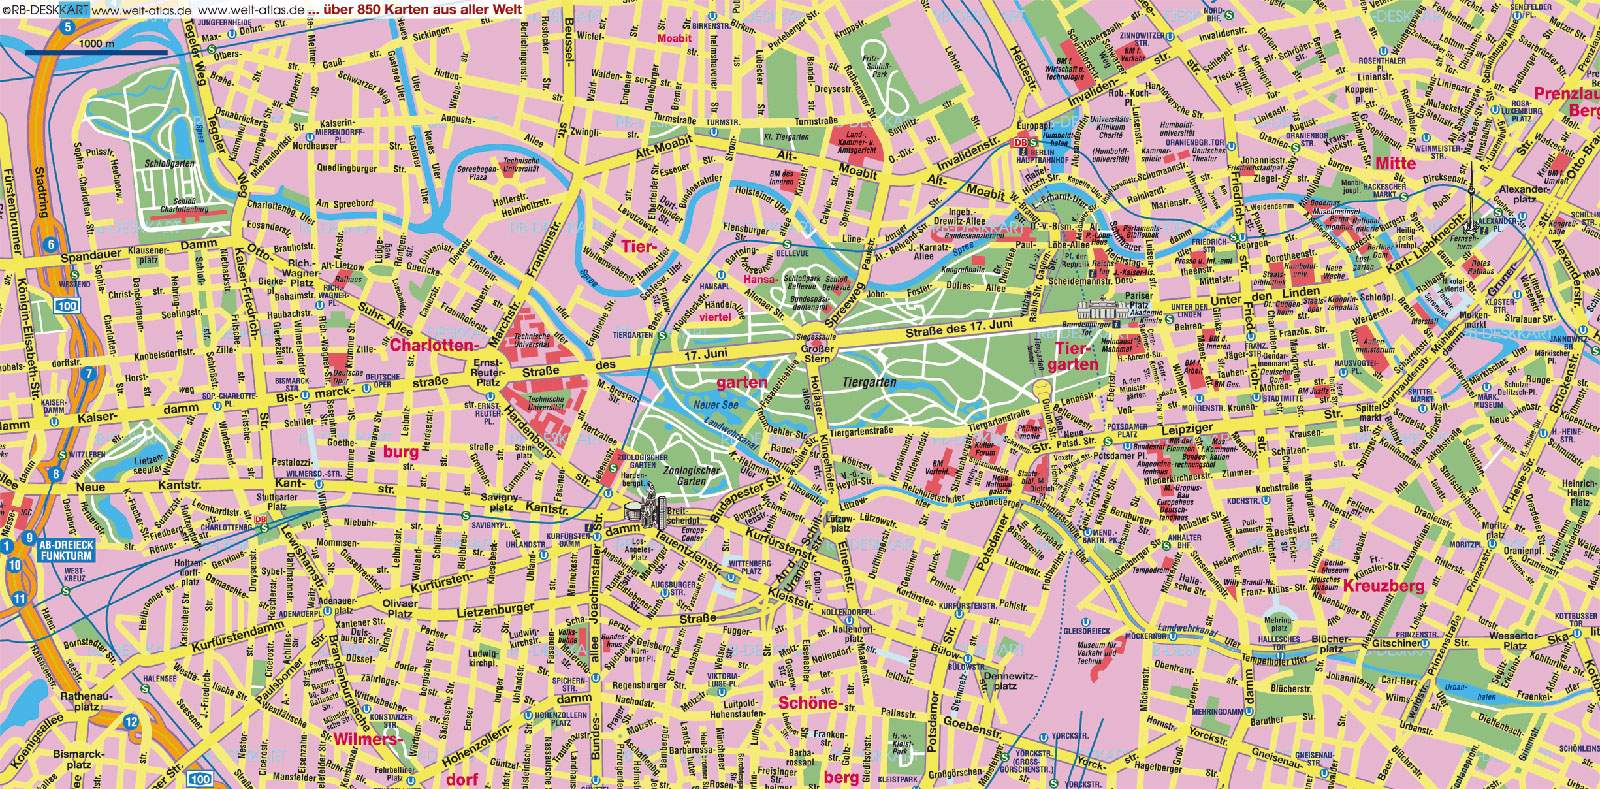 Stadtplan von Berlin Detaillierte gedruckte Karten von